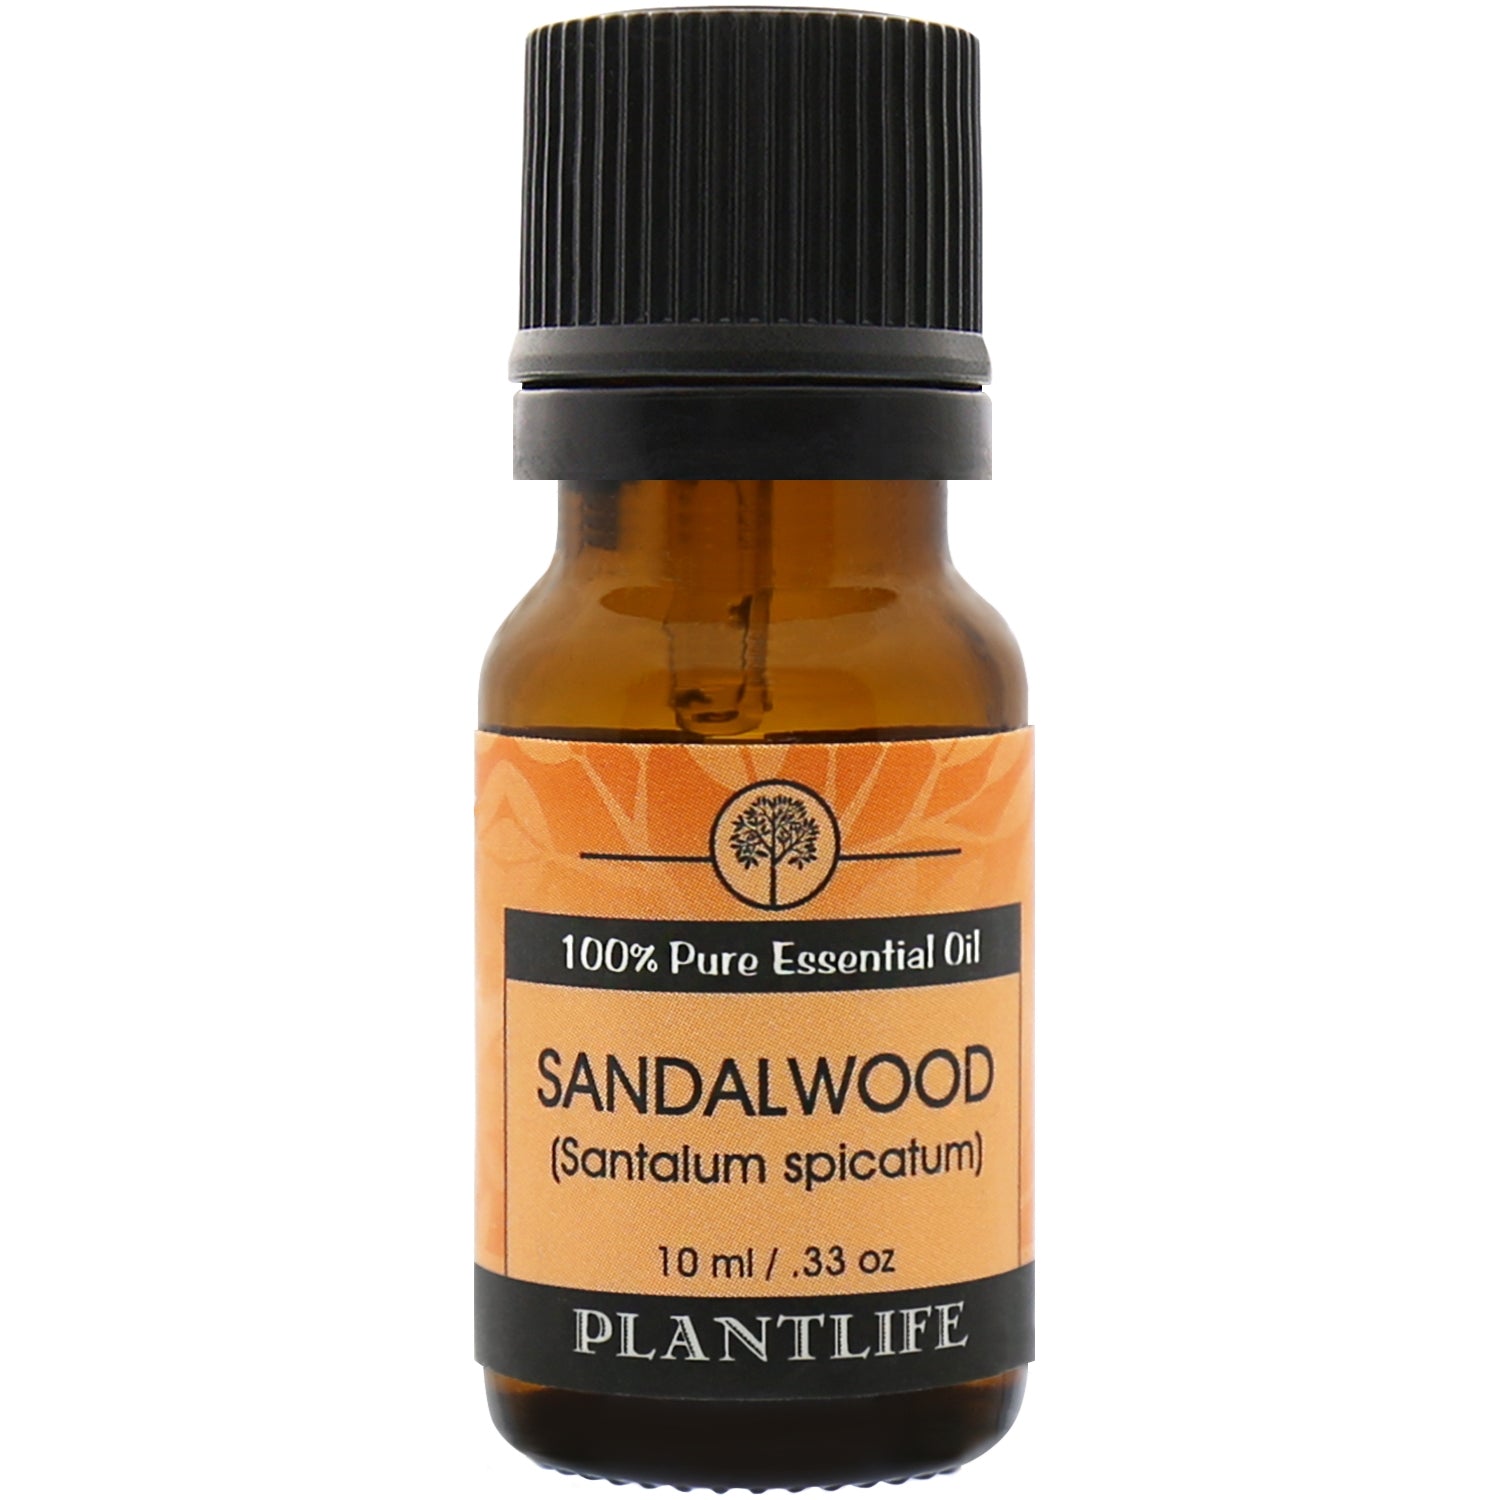 Plantlife Sandalwood 100% Pure Essential Oil - 10 ml